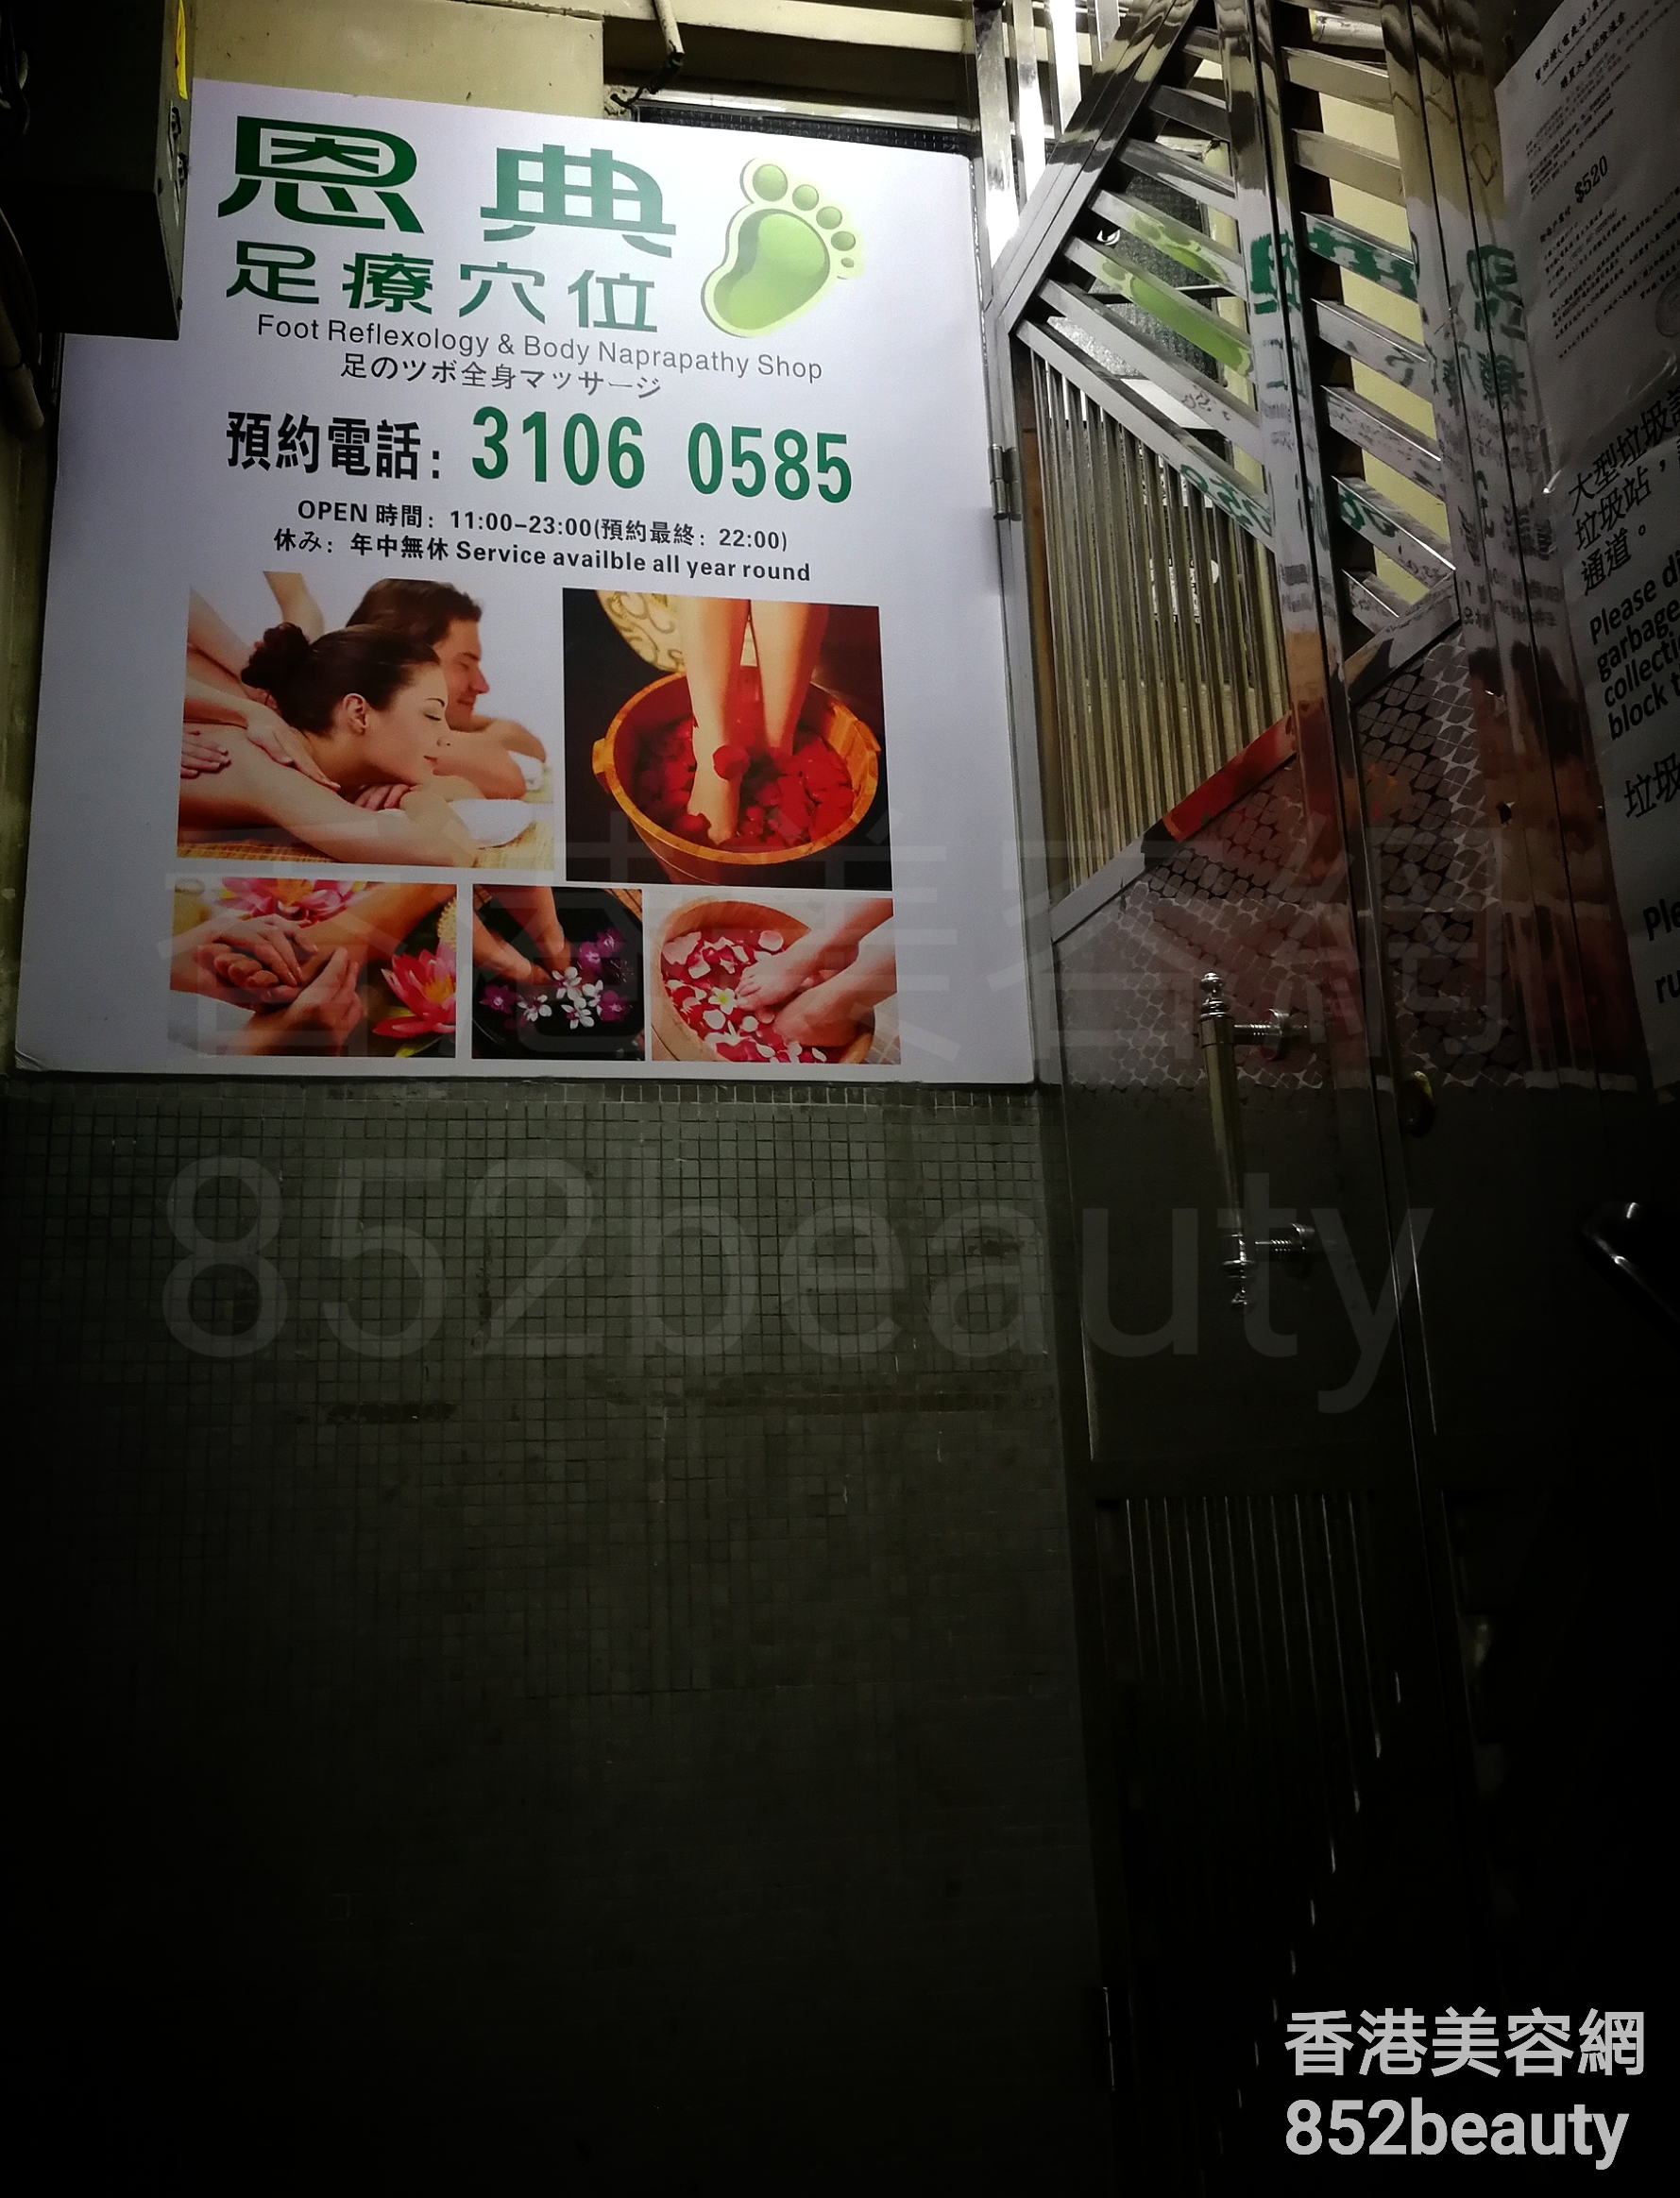 美容院 Beauty Salon: 恩典 足療穴位